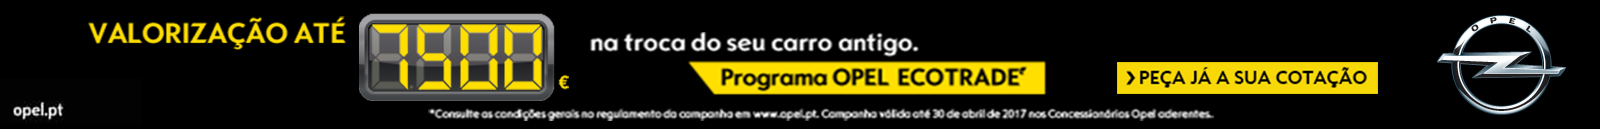 Opel Programa Ecotrade